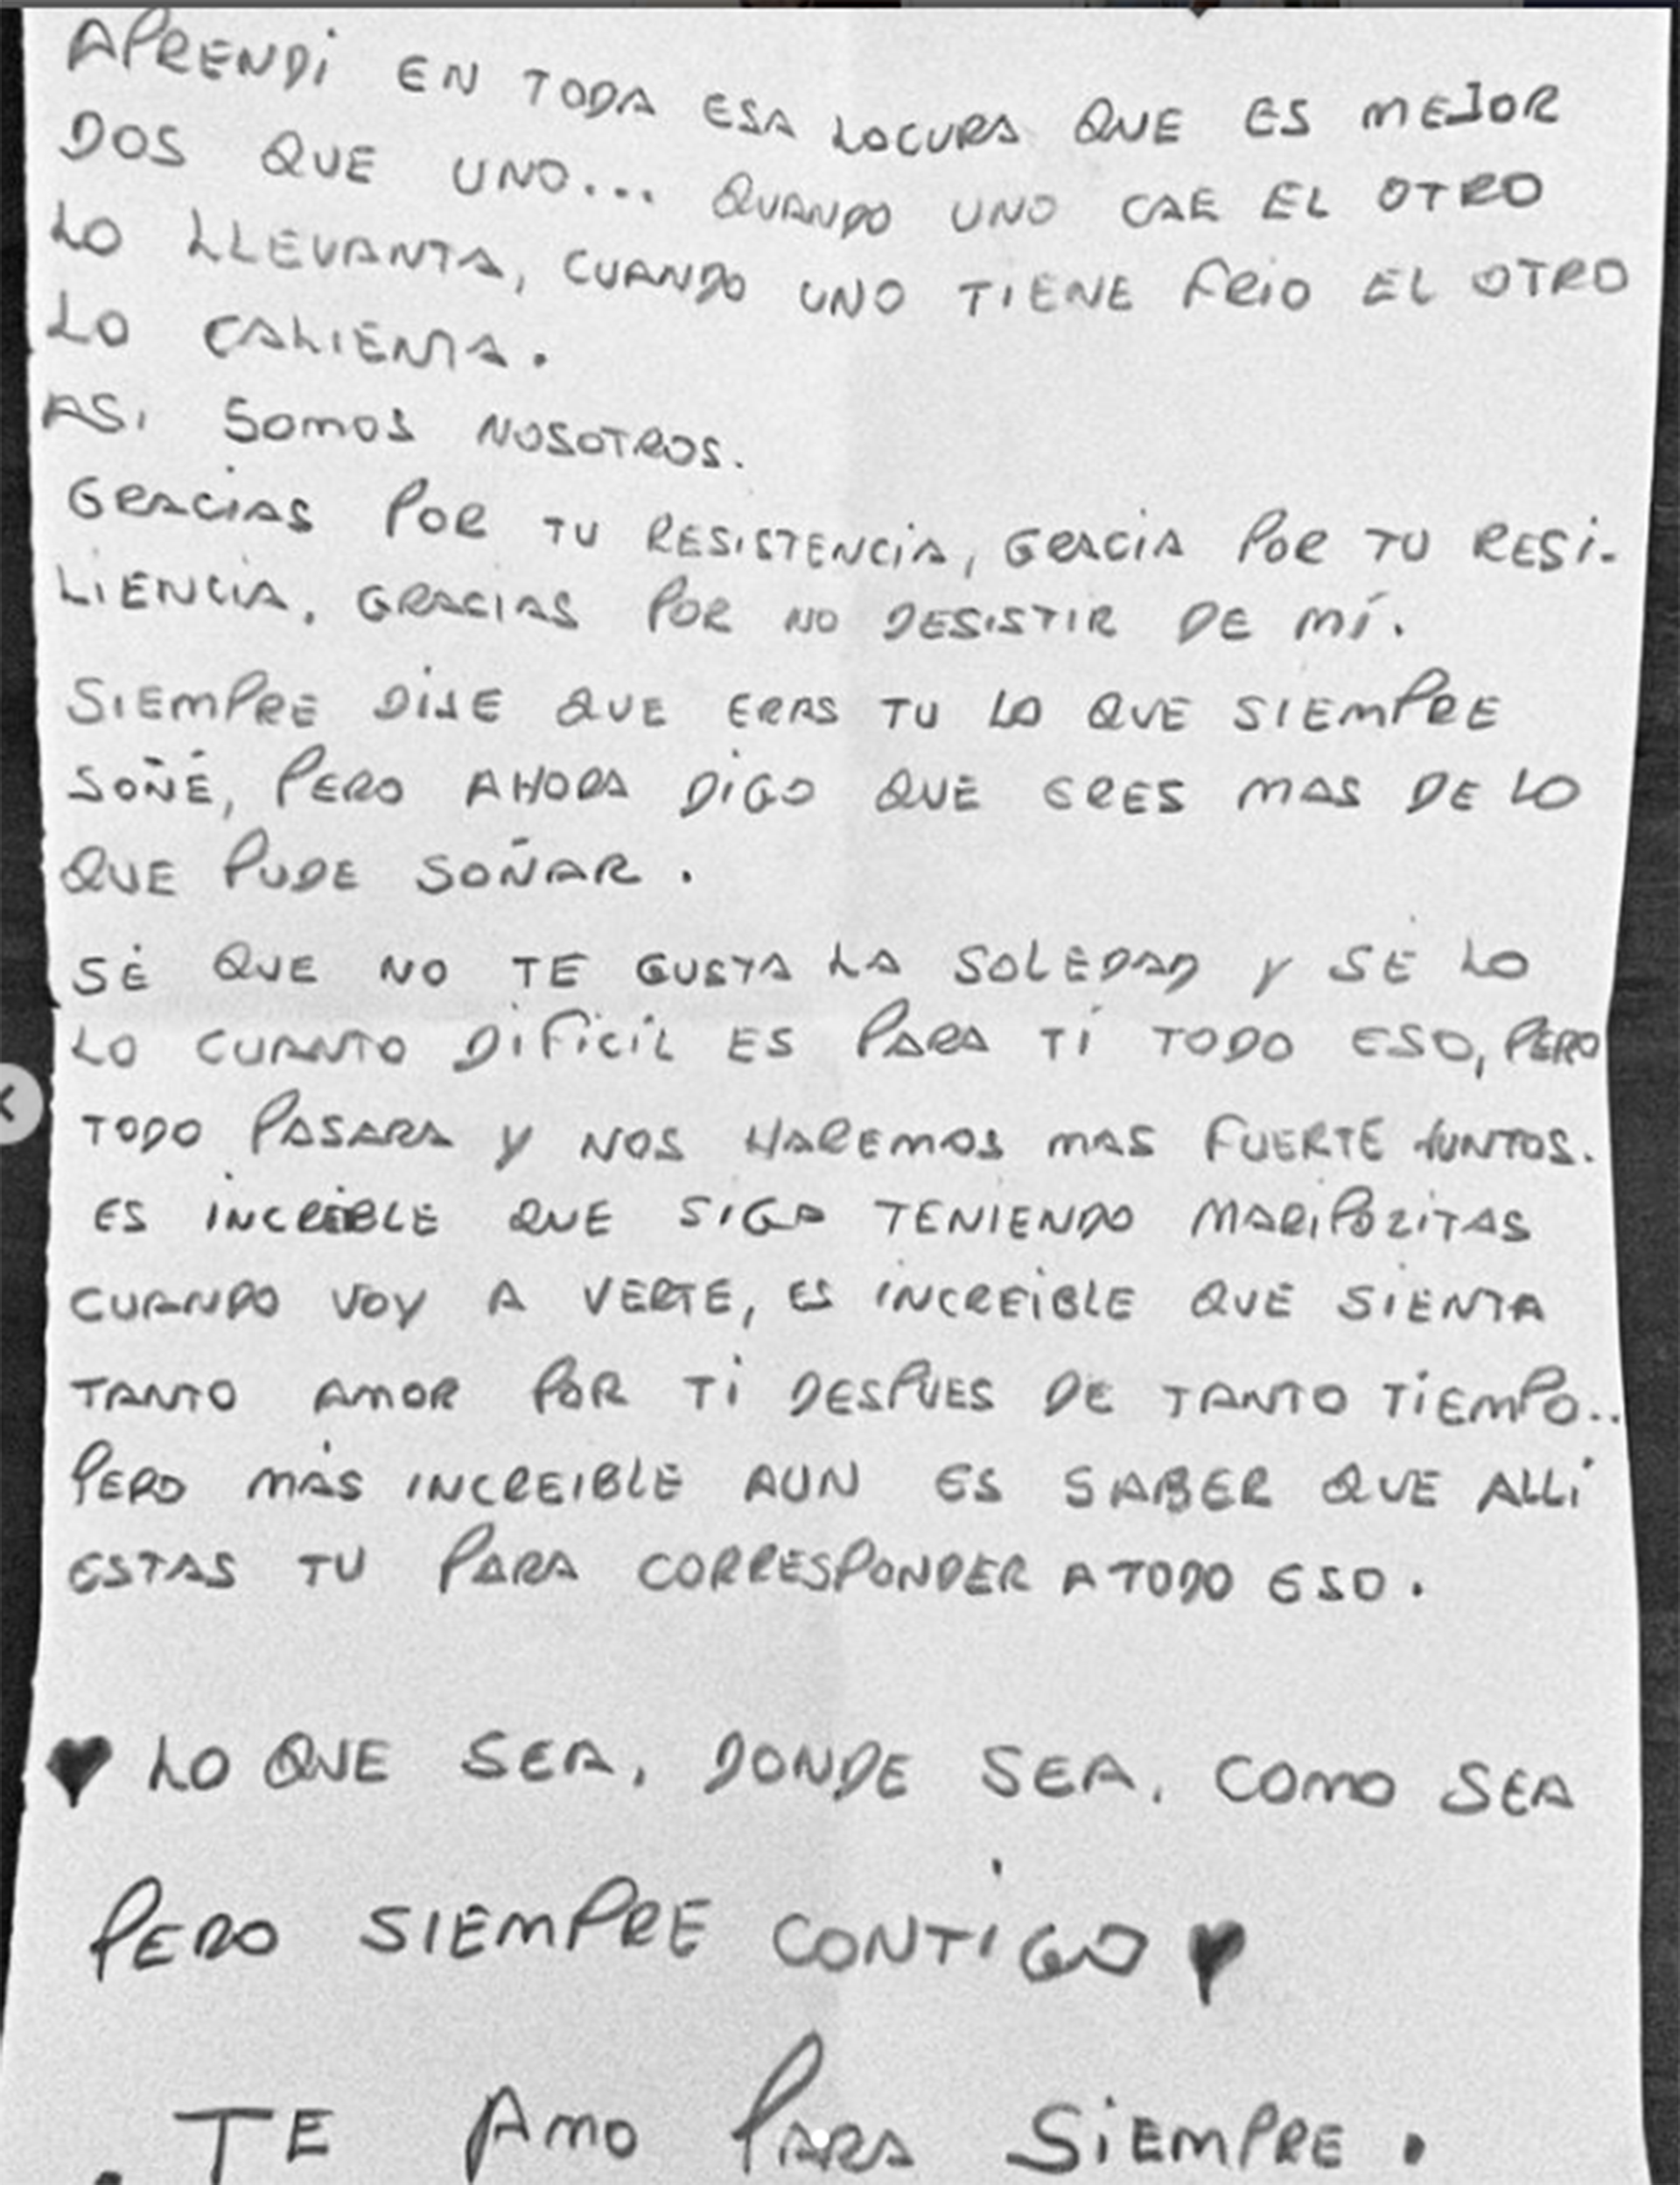 Joana Sanz comparte esta carta en su perfil de Instagram